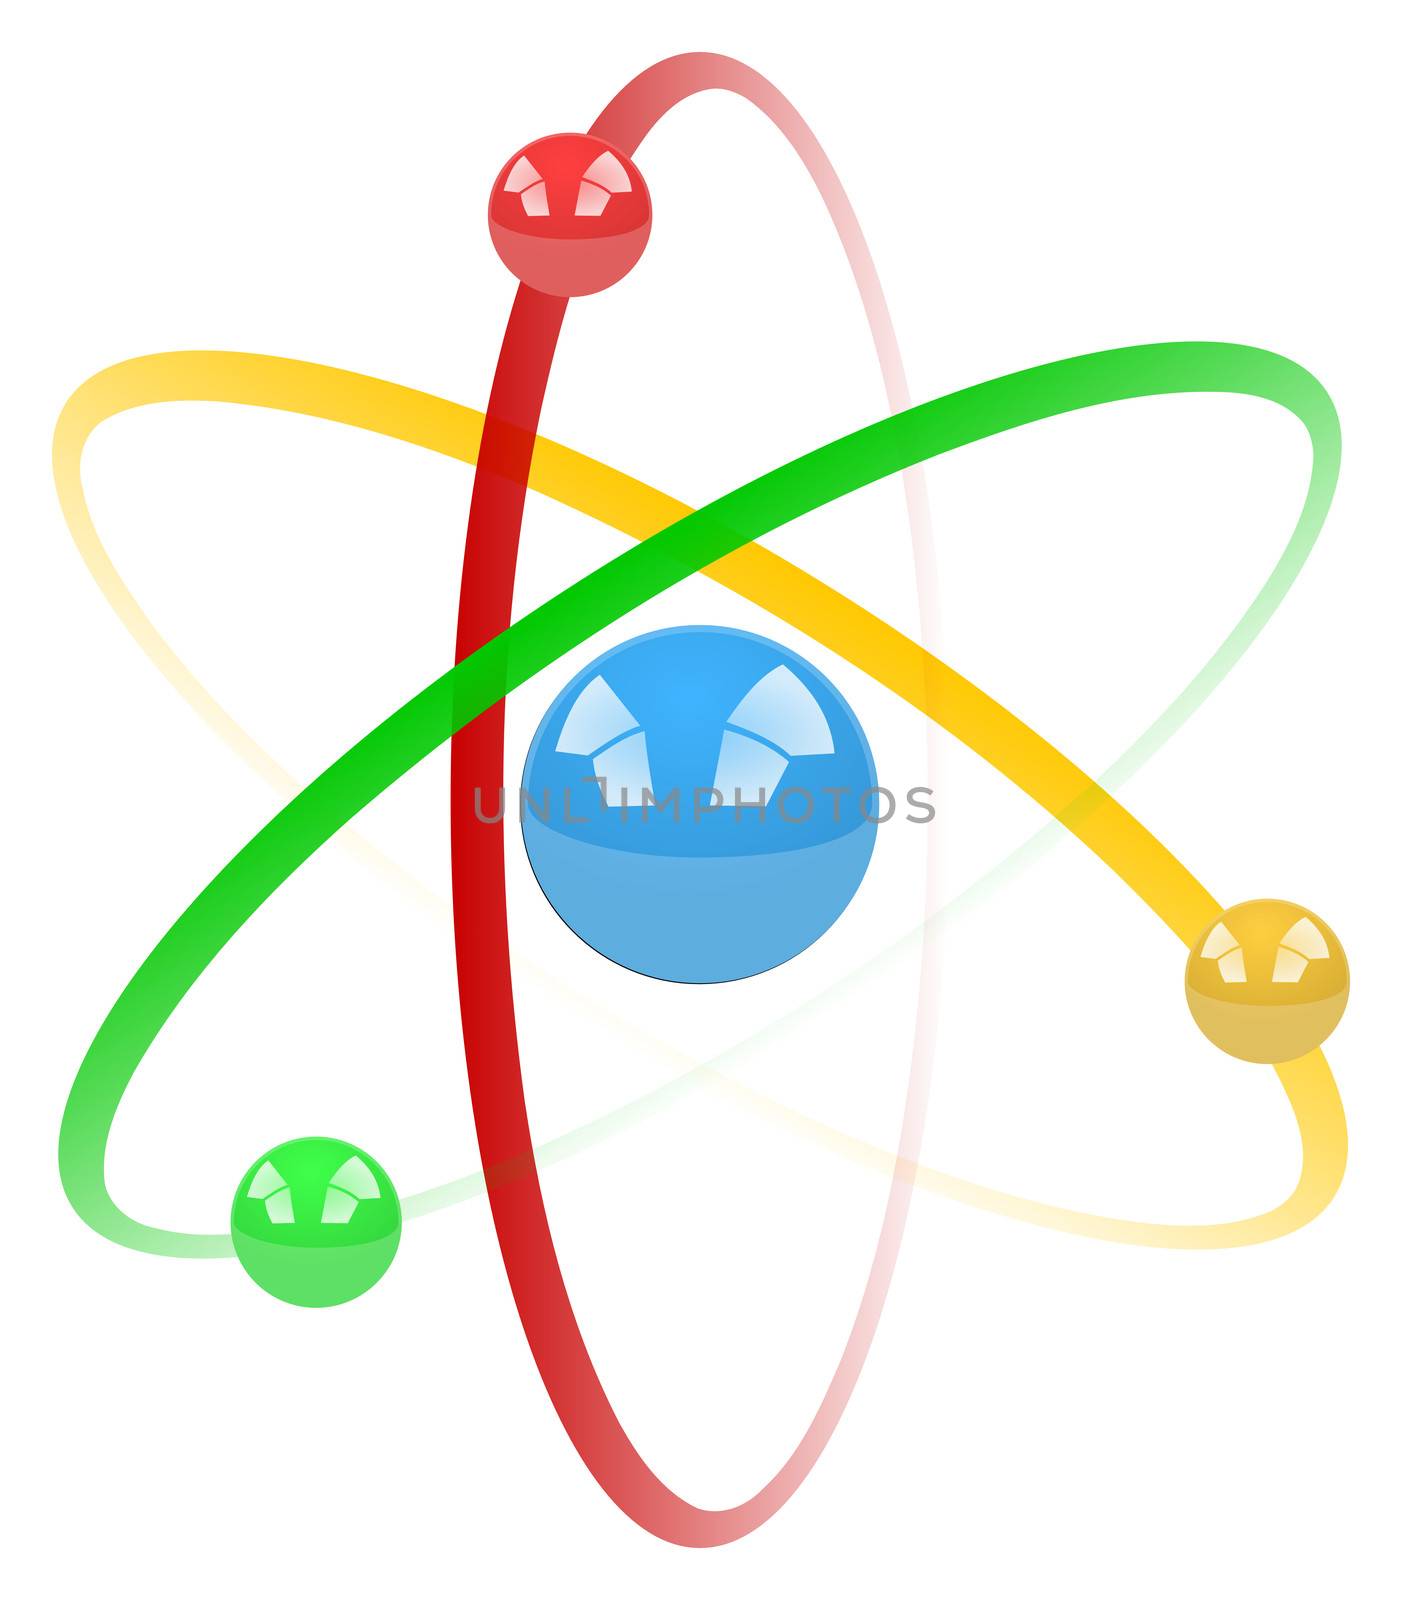 Colorful Atom Illustration Isolated on White Background